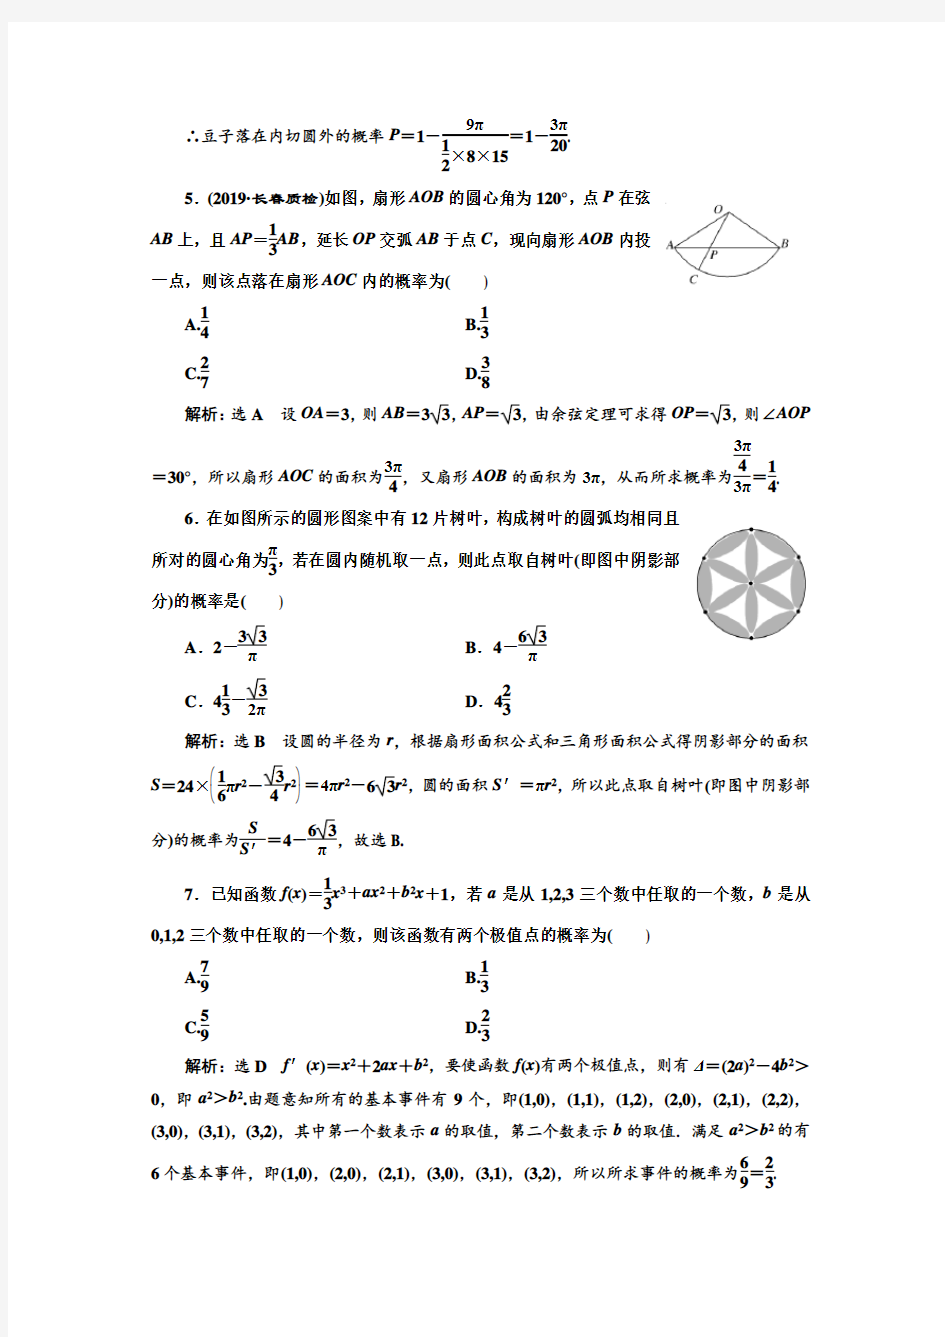 高考文科数学练习题古典概型与几何概型